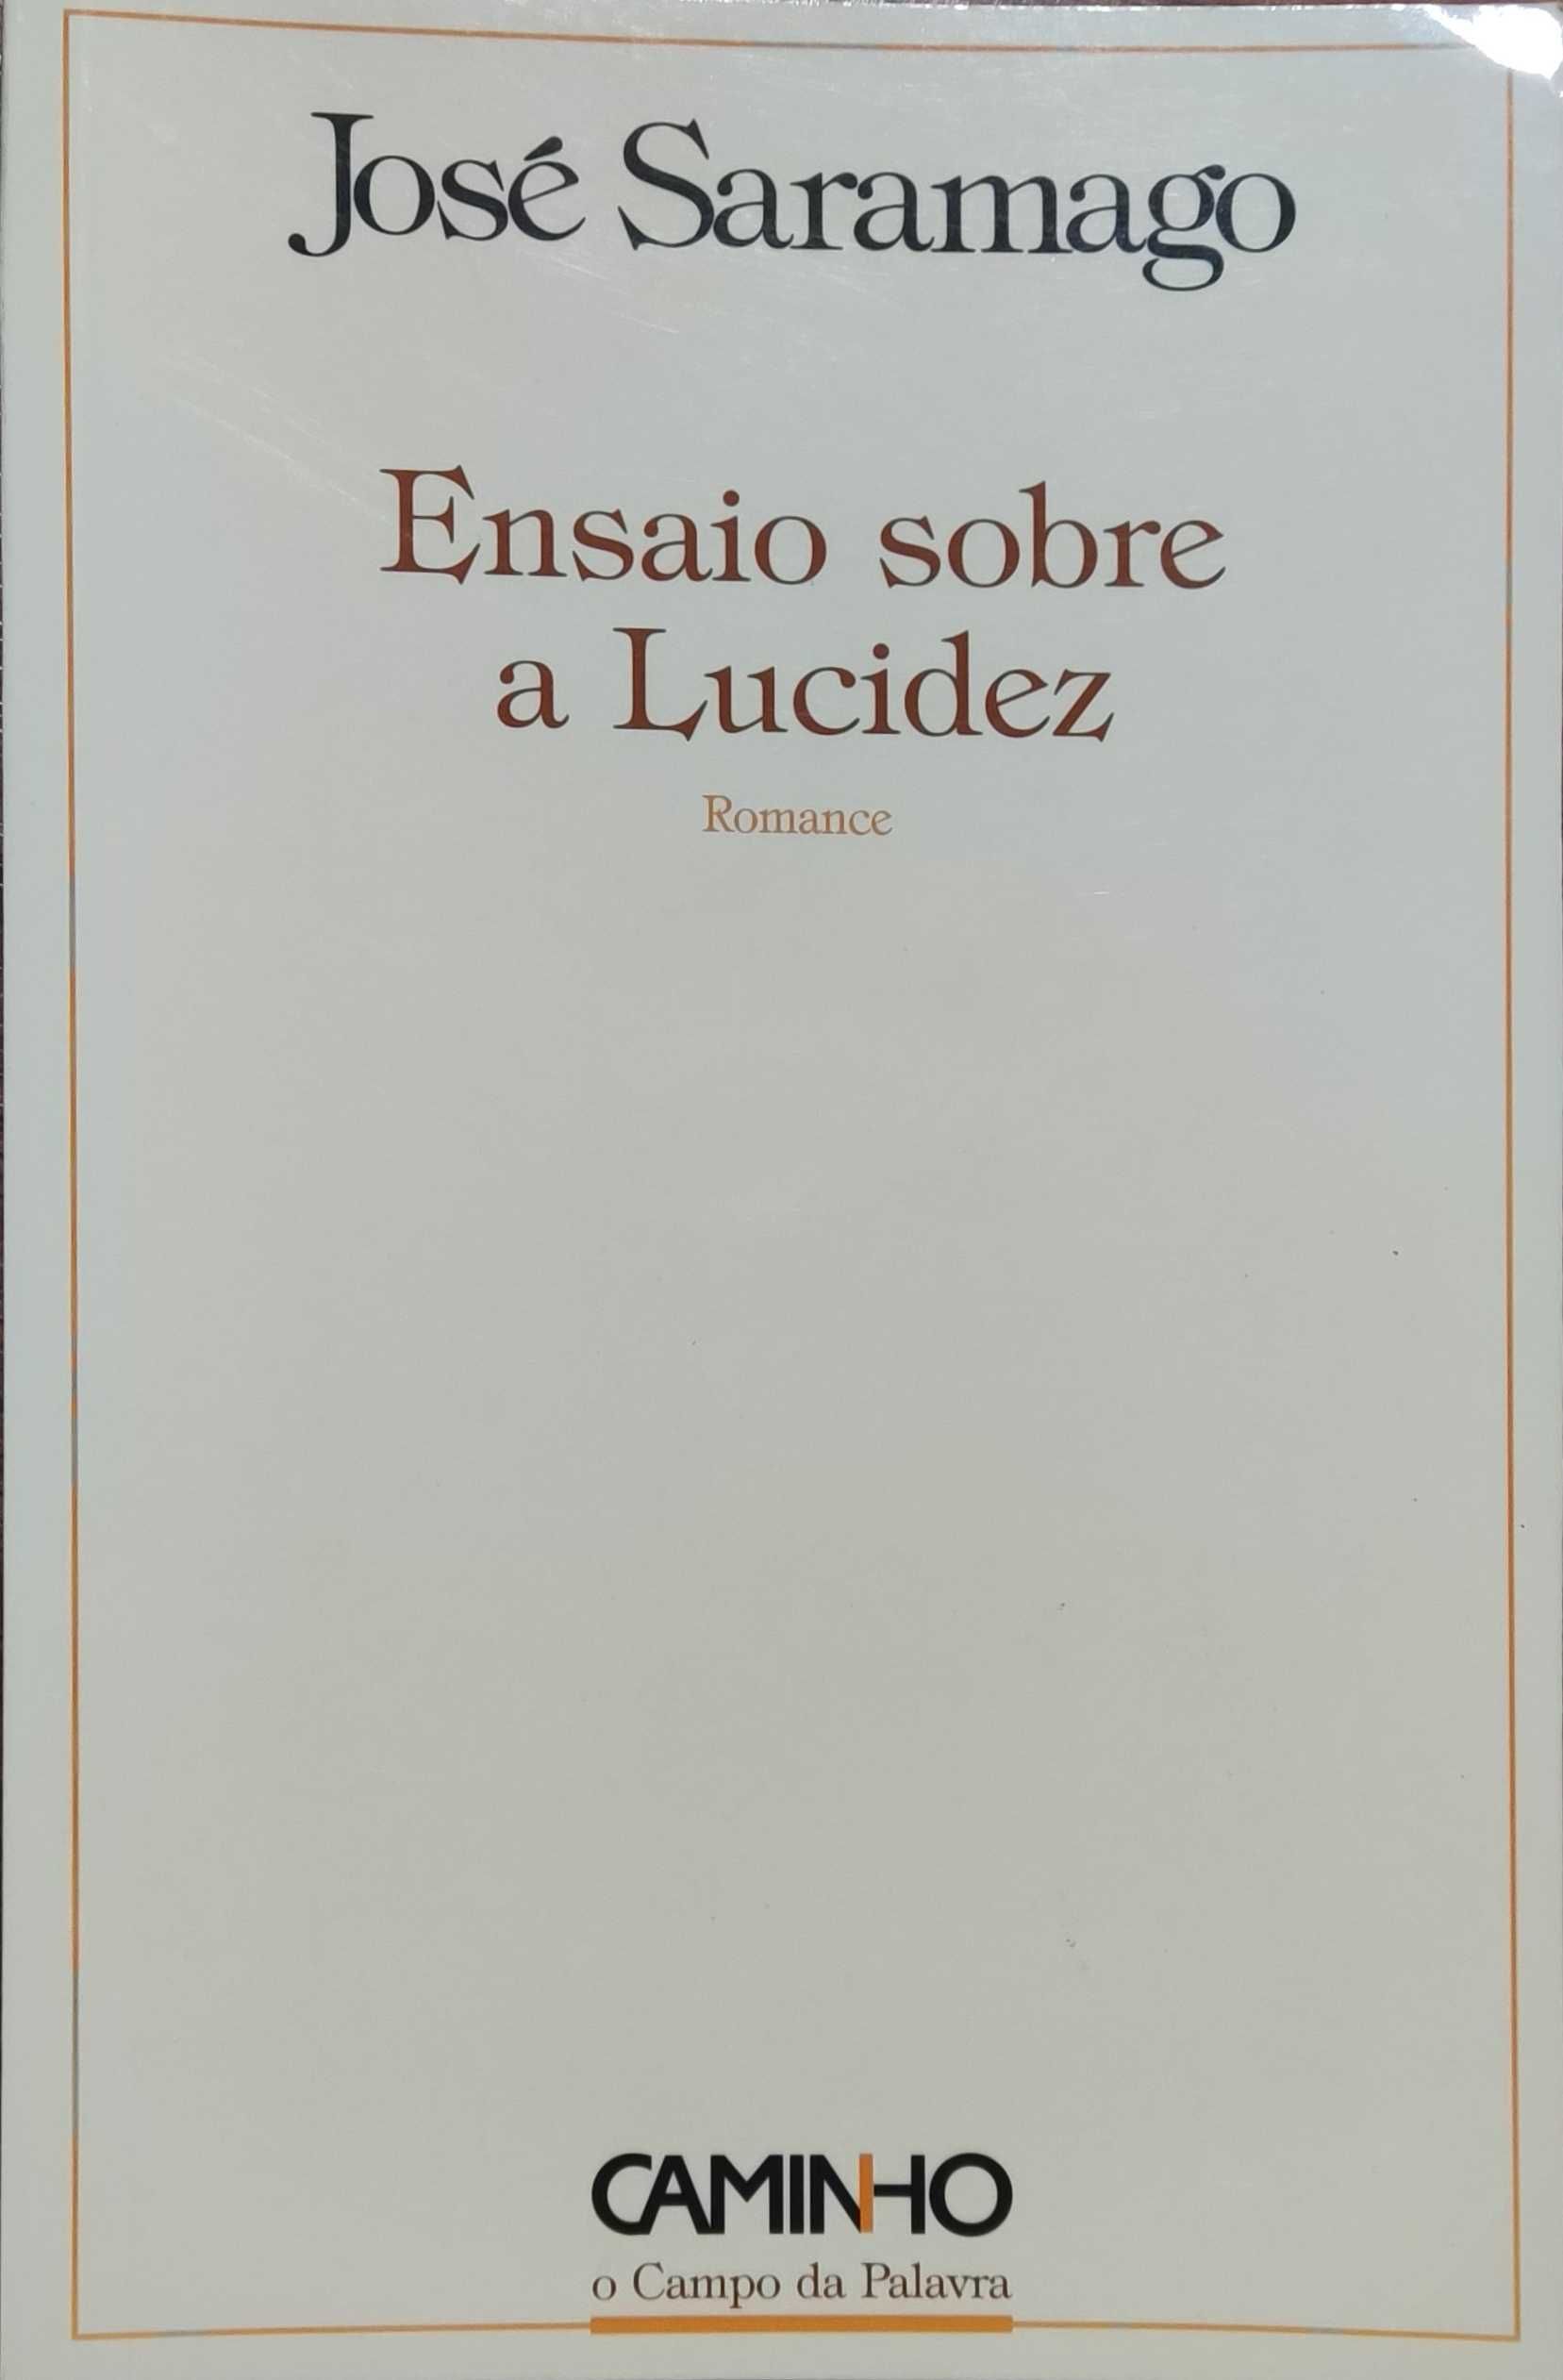 Livro "Ensaio sobre a Lucidez" de José Saramago